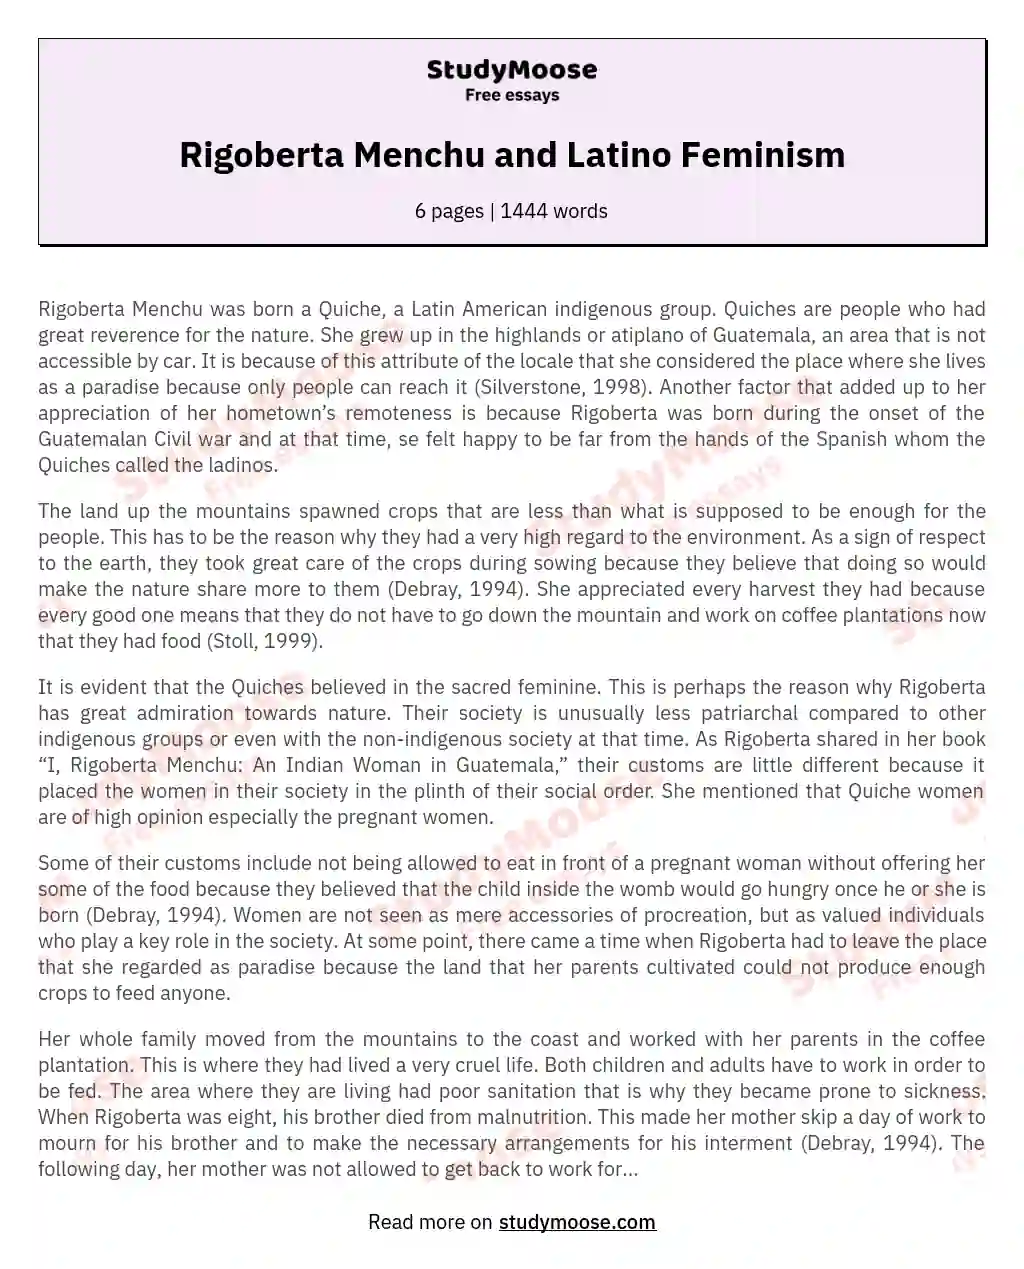 Rigoberta Menchu and Latino Feminism essay